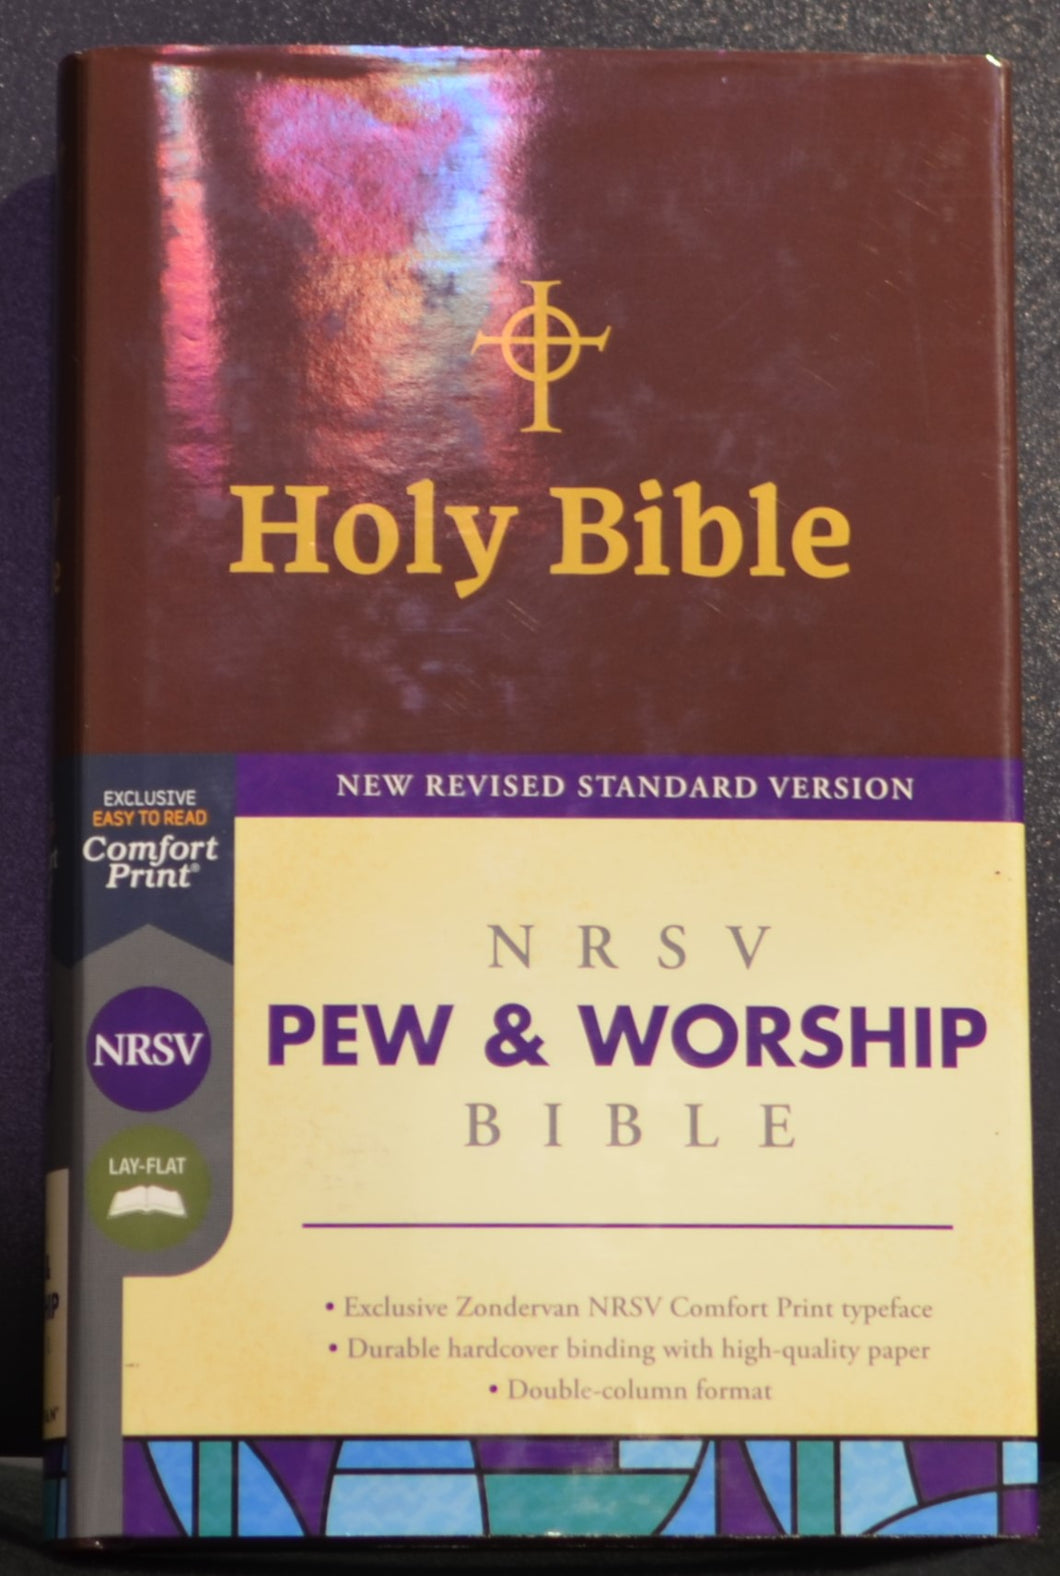 Holy Bible-NRSV Pew & Worship Bible